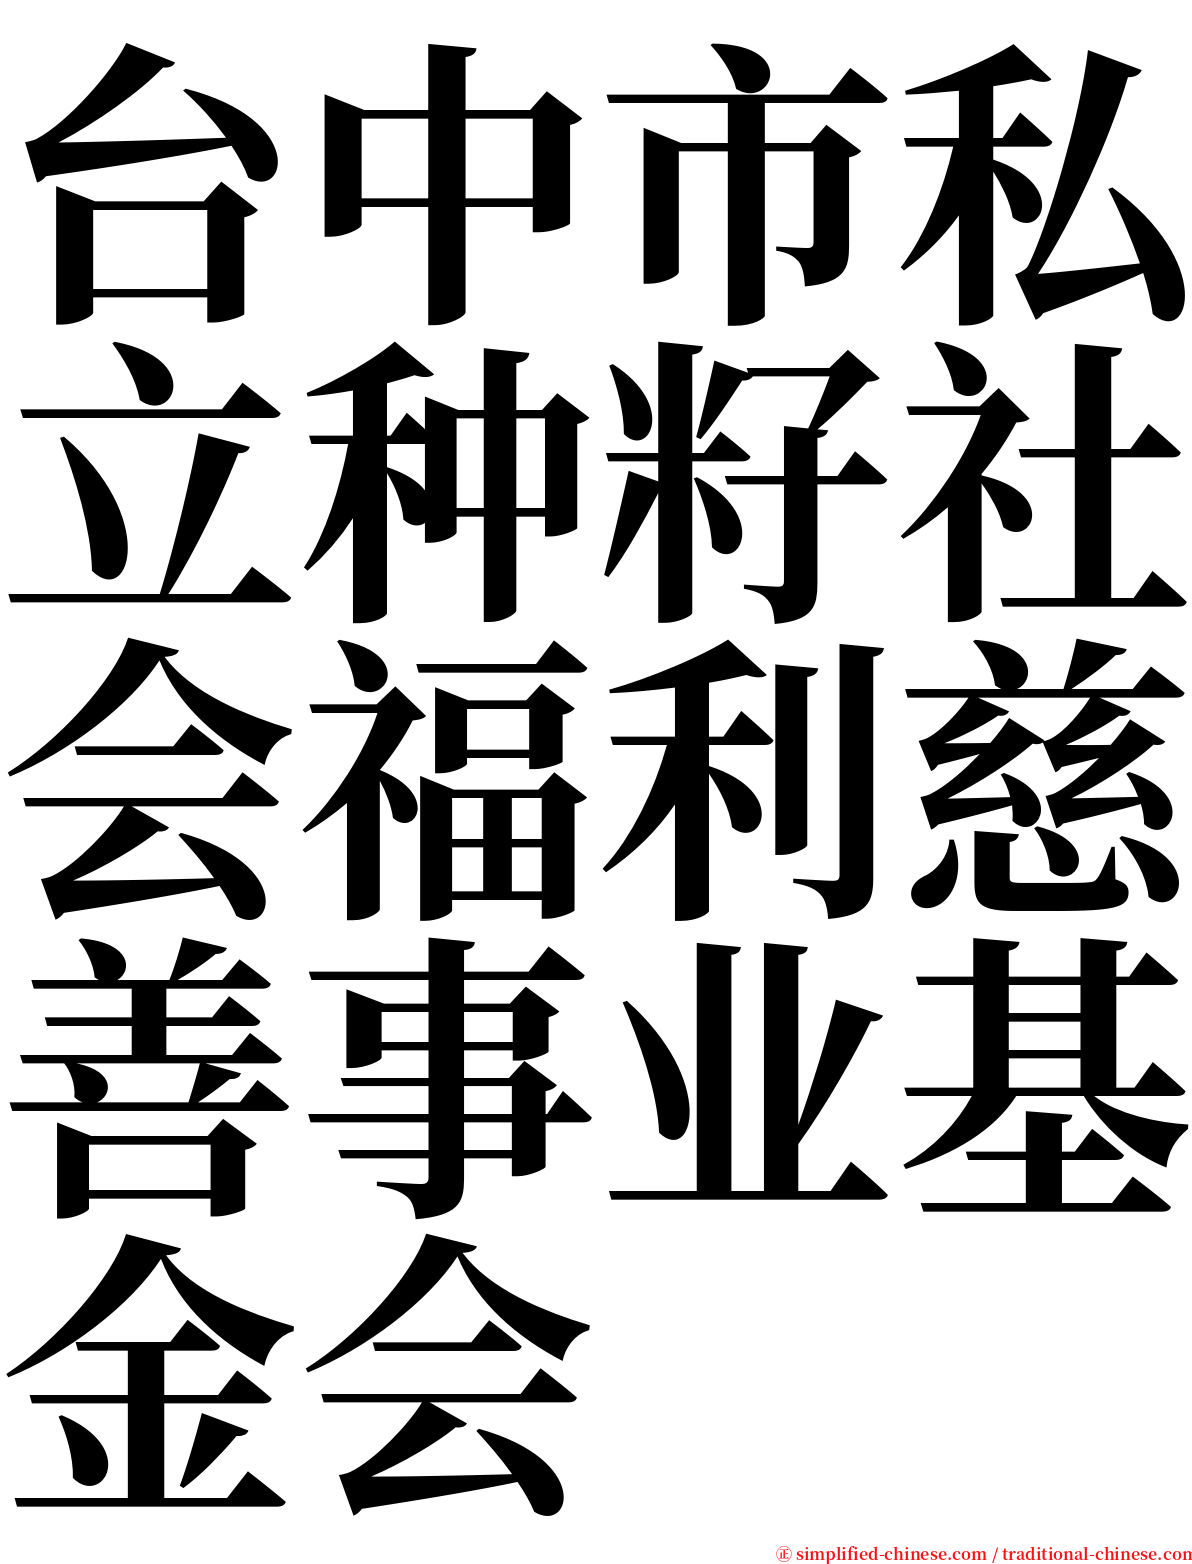 台中市私立种籽社会福利慈善事业基金会 serif font